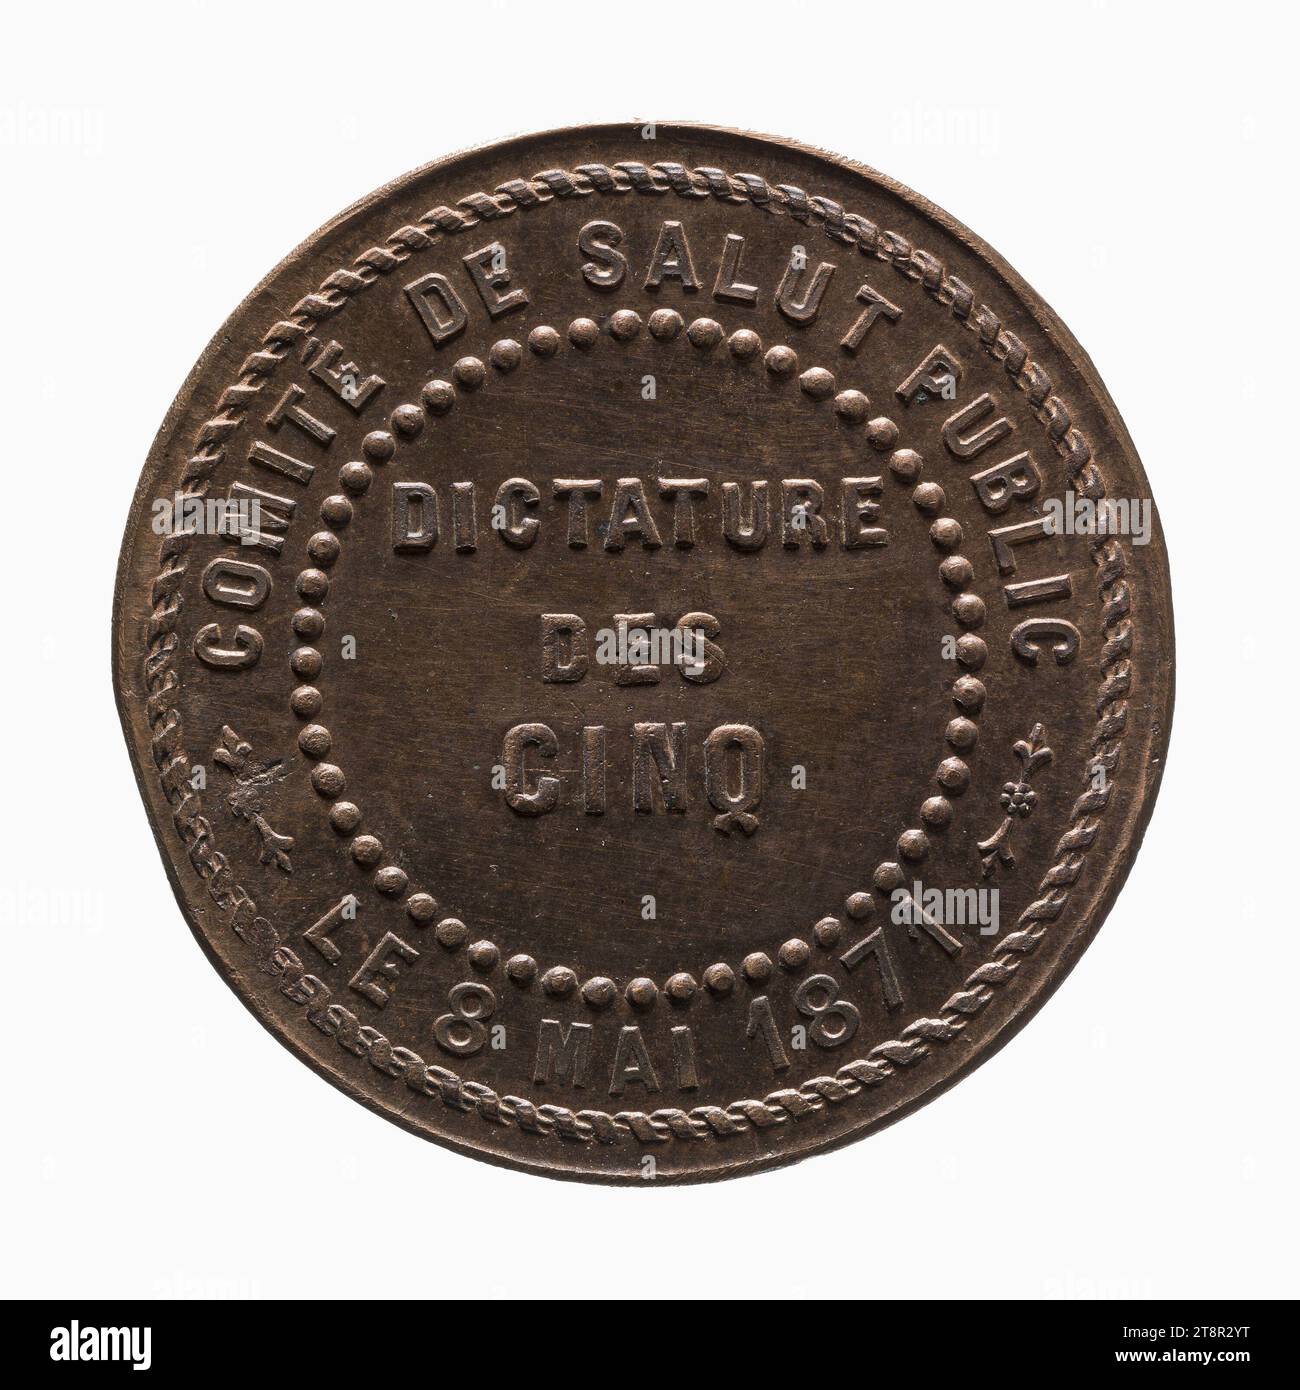 Commune de Paris : dictature des cinq, 8 mai 1871, Array, Numismatique, médaille, cuivre, Dimensions - oeuvre : diamètre : 2,7 cm, poids (dimension type) : 8,54 g. Banque D'Images